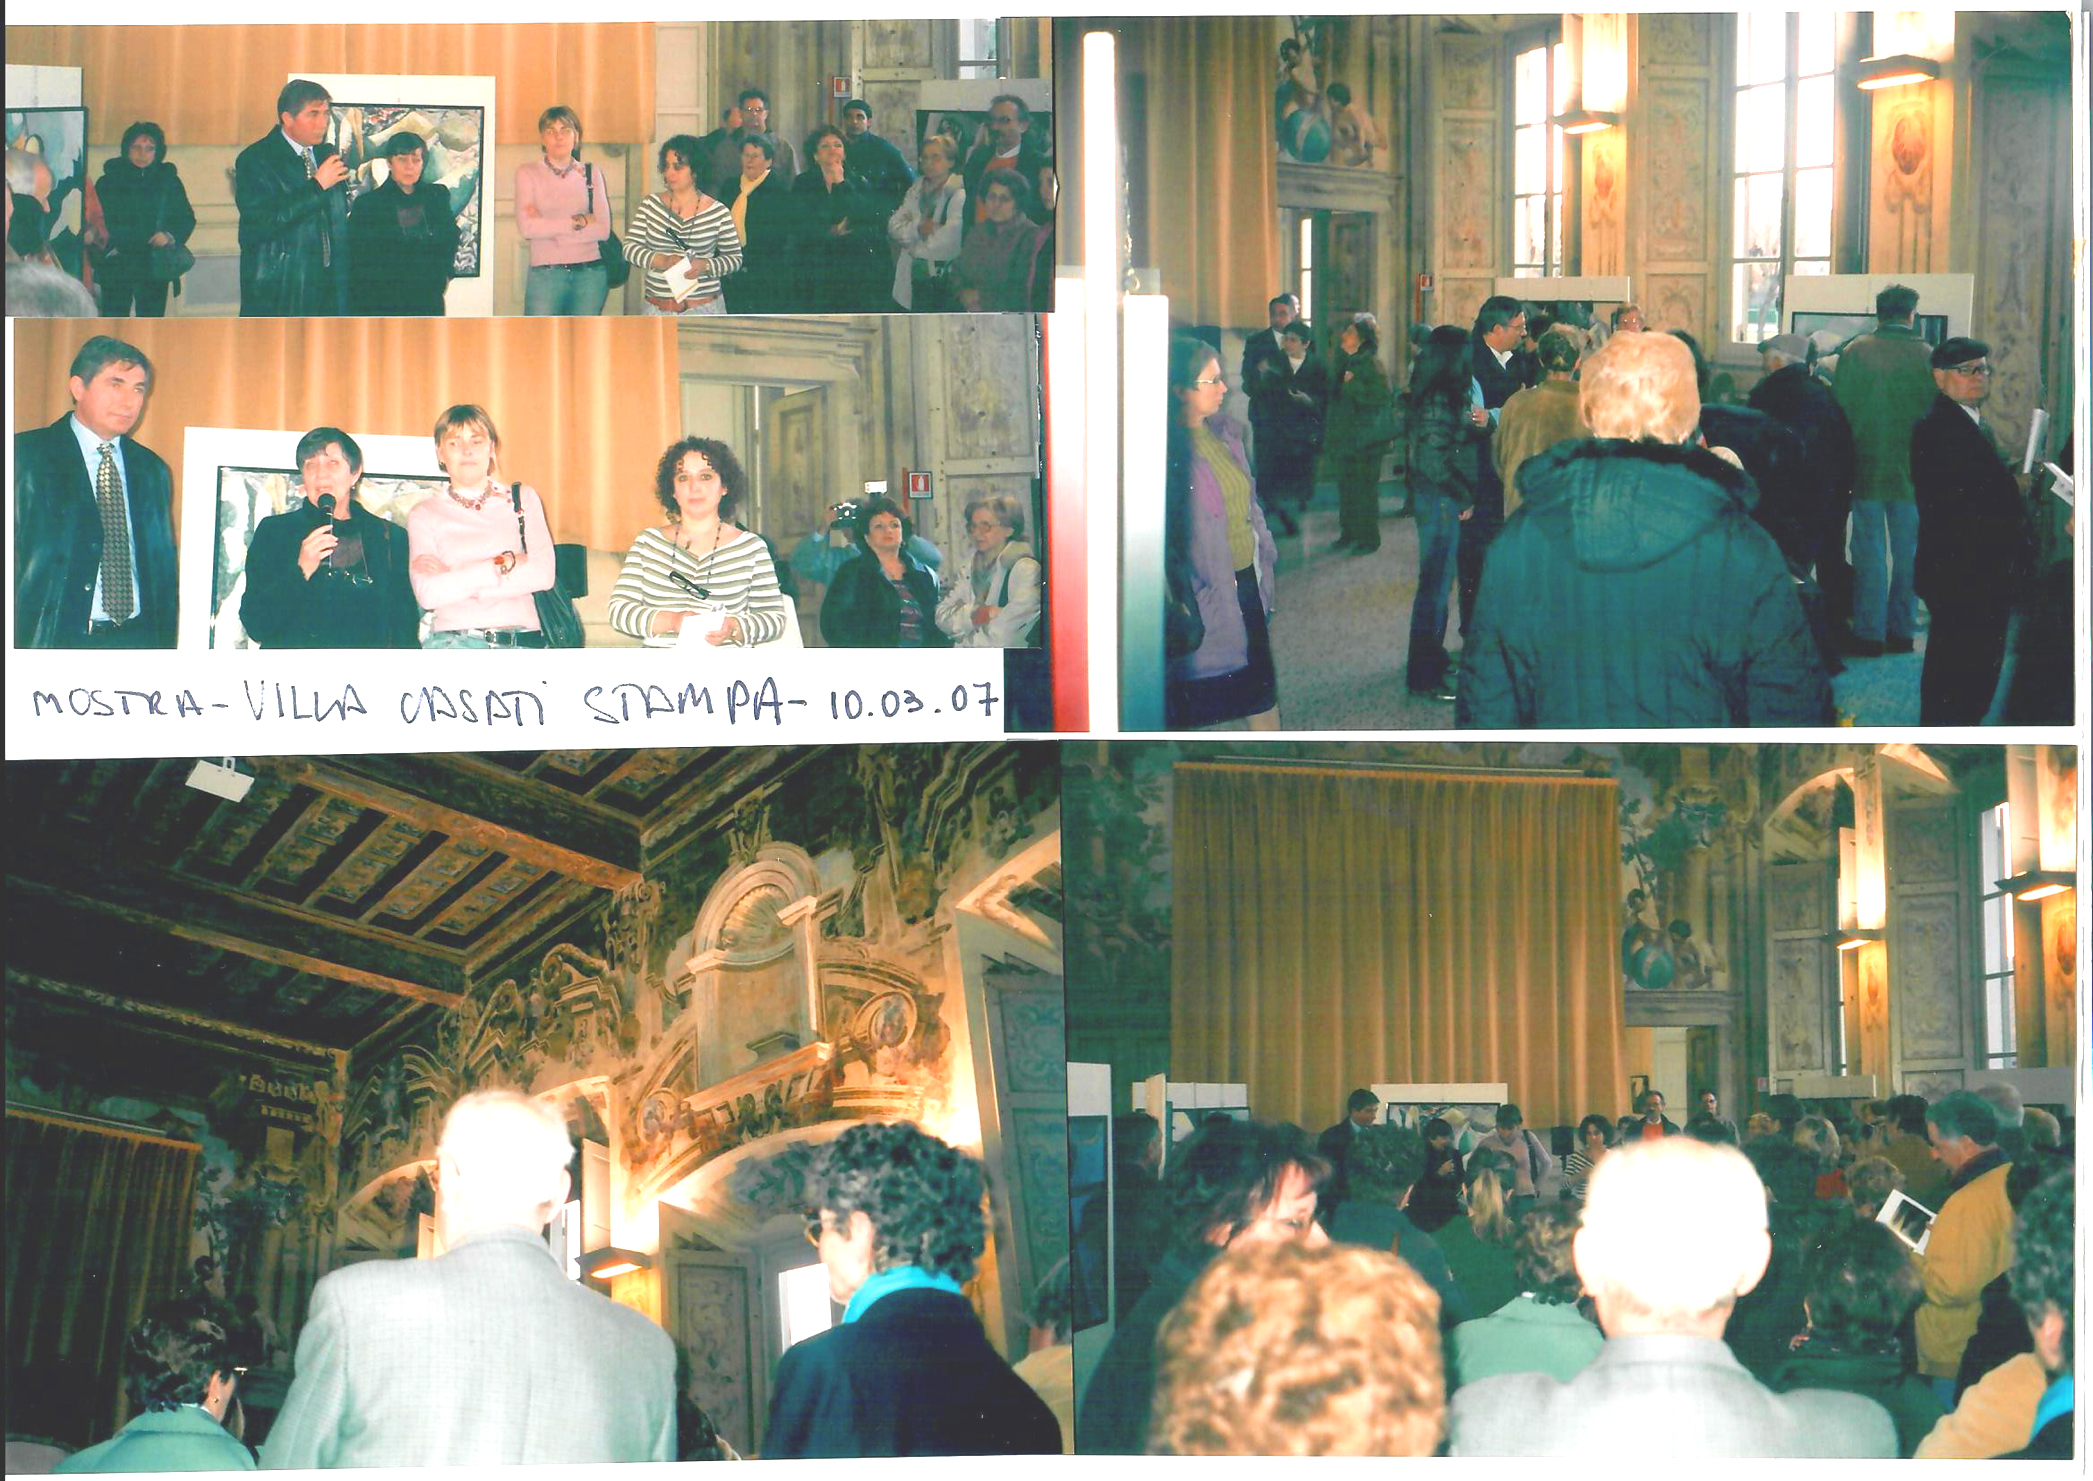 2007 - Personale di Gladys Sica,  'Omaggio alla donna', Villa Casati Stampa di Soncino, Comune di Cinisello Balsamo, Milano